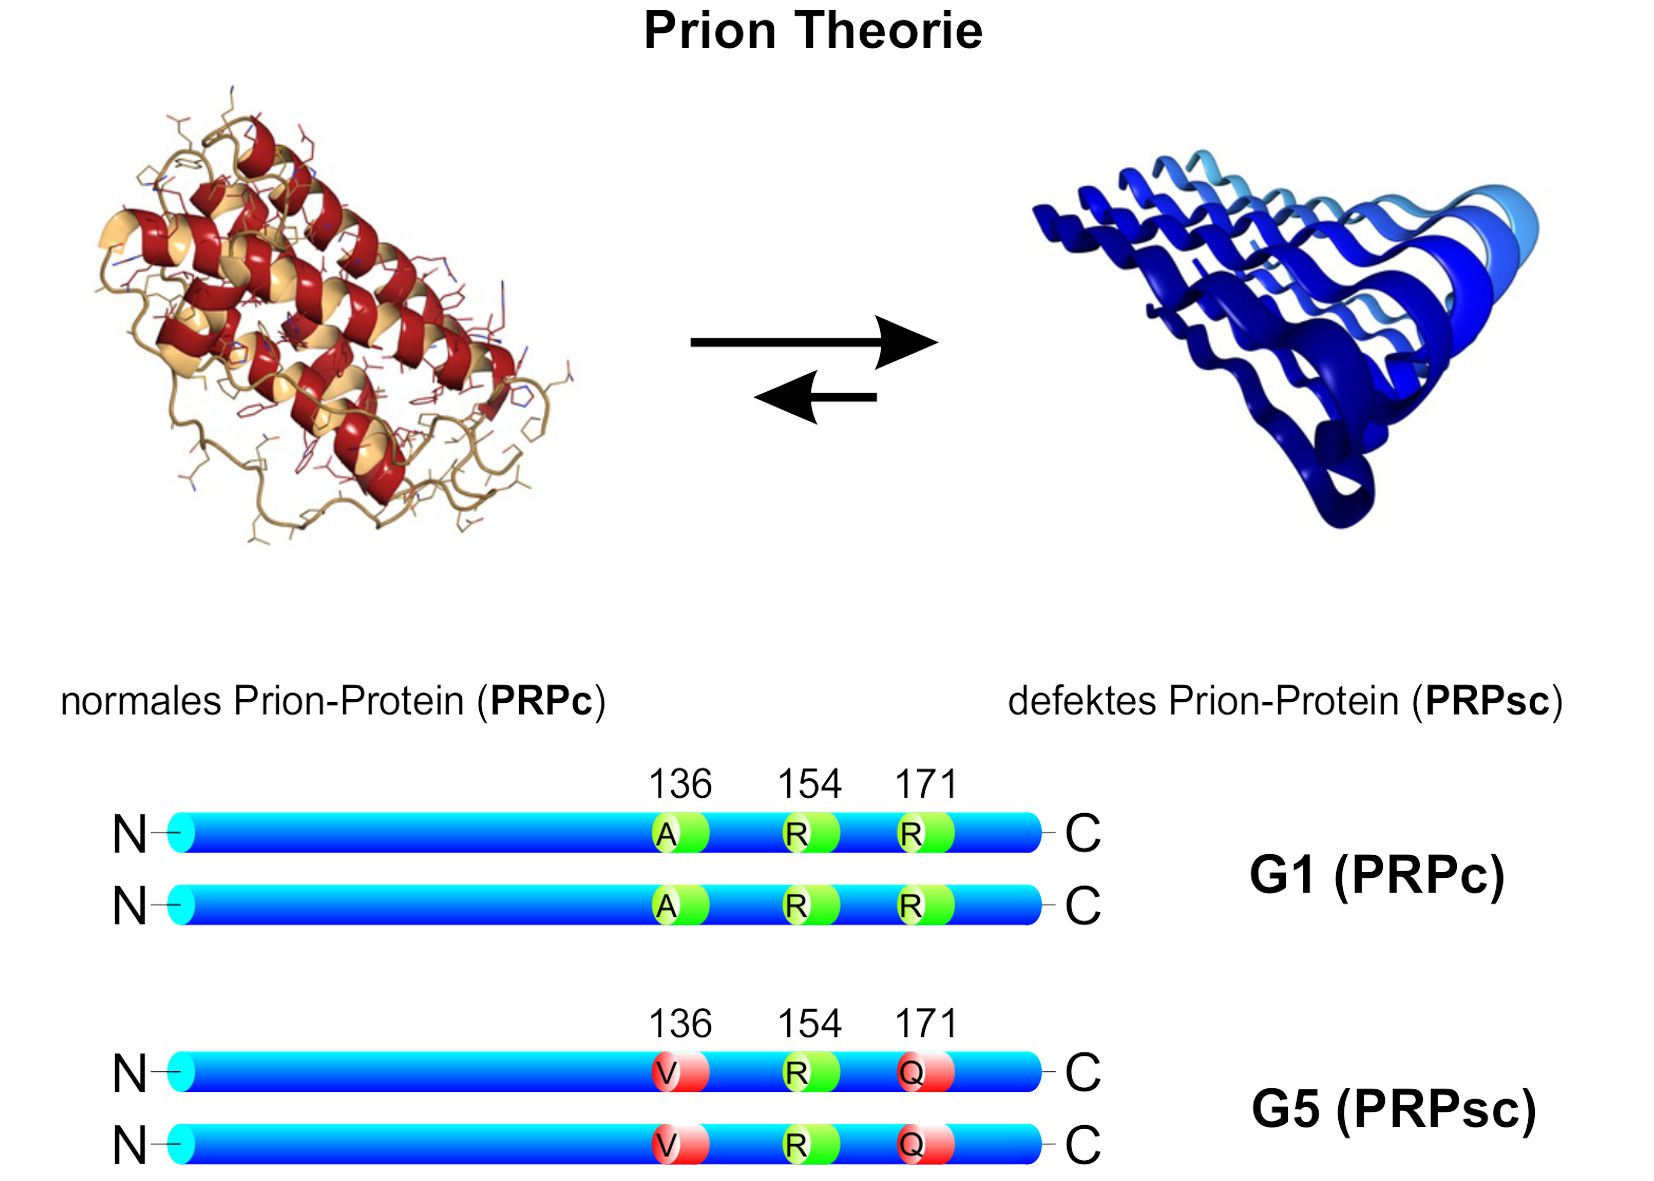 Prion-Theorie als Basis der Genotypisierung